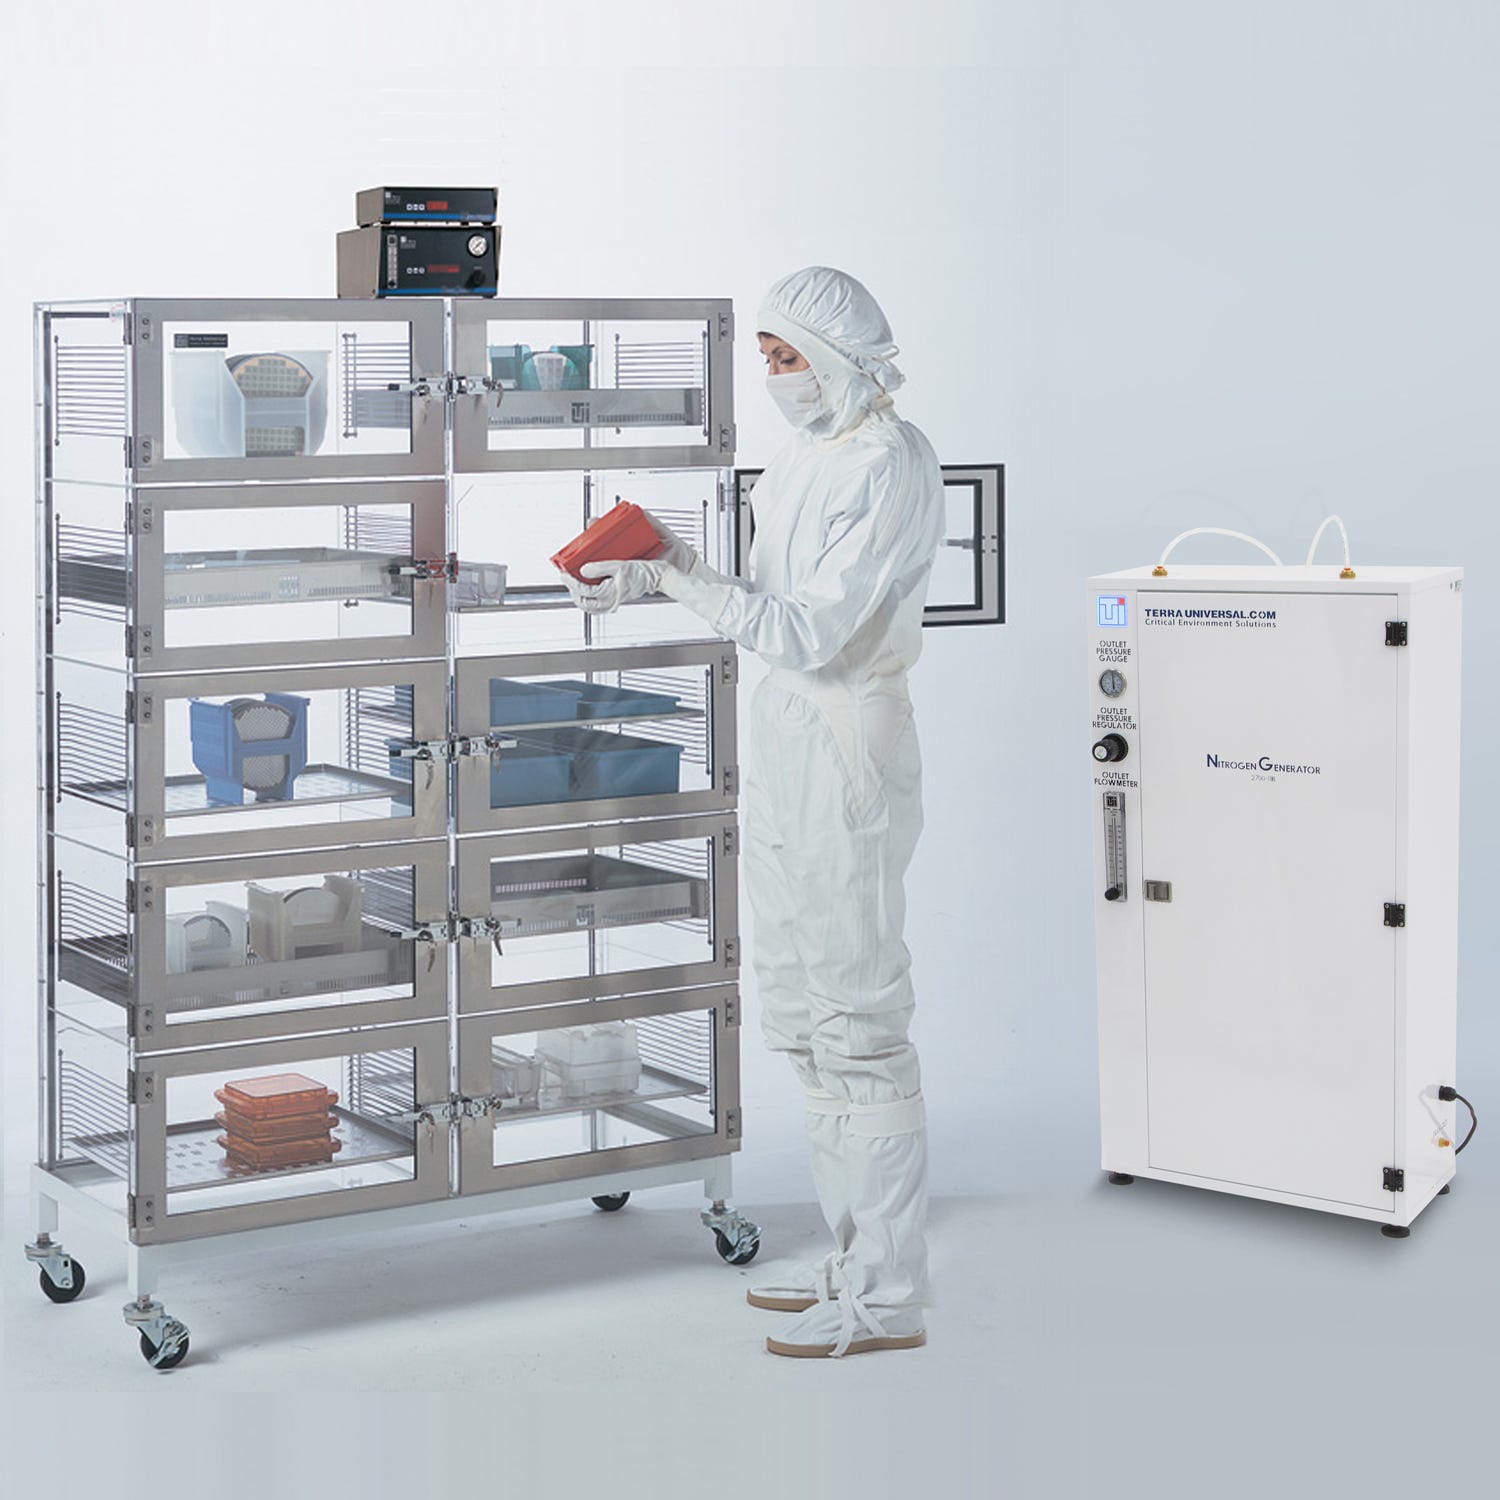 Adjust-a-shelf desiccator cabinet with nitrogen generator and model